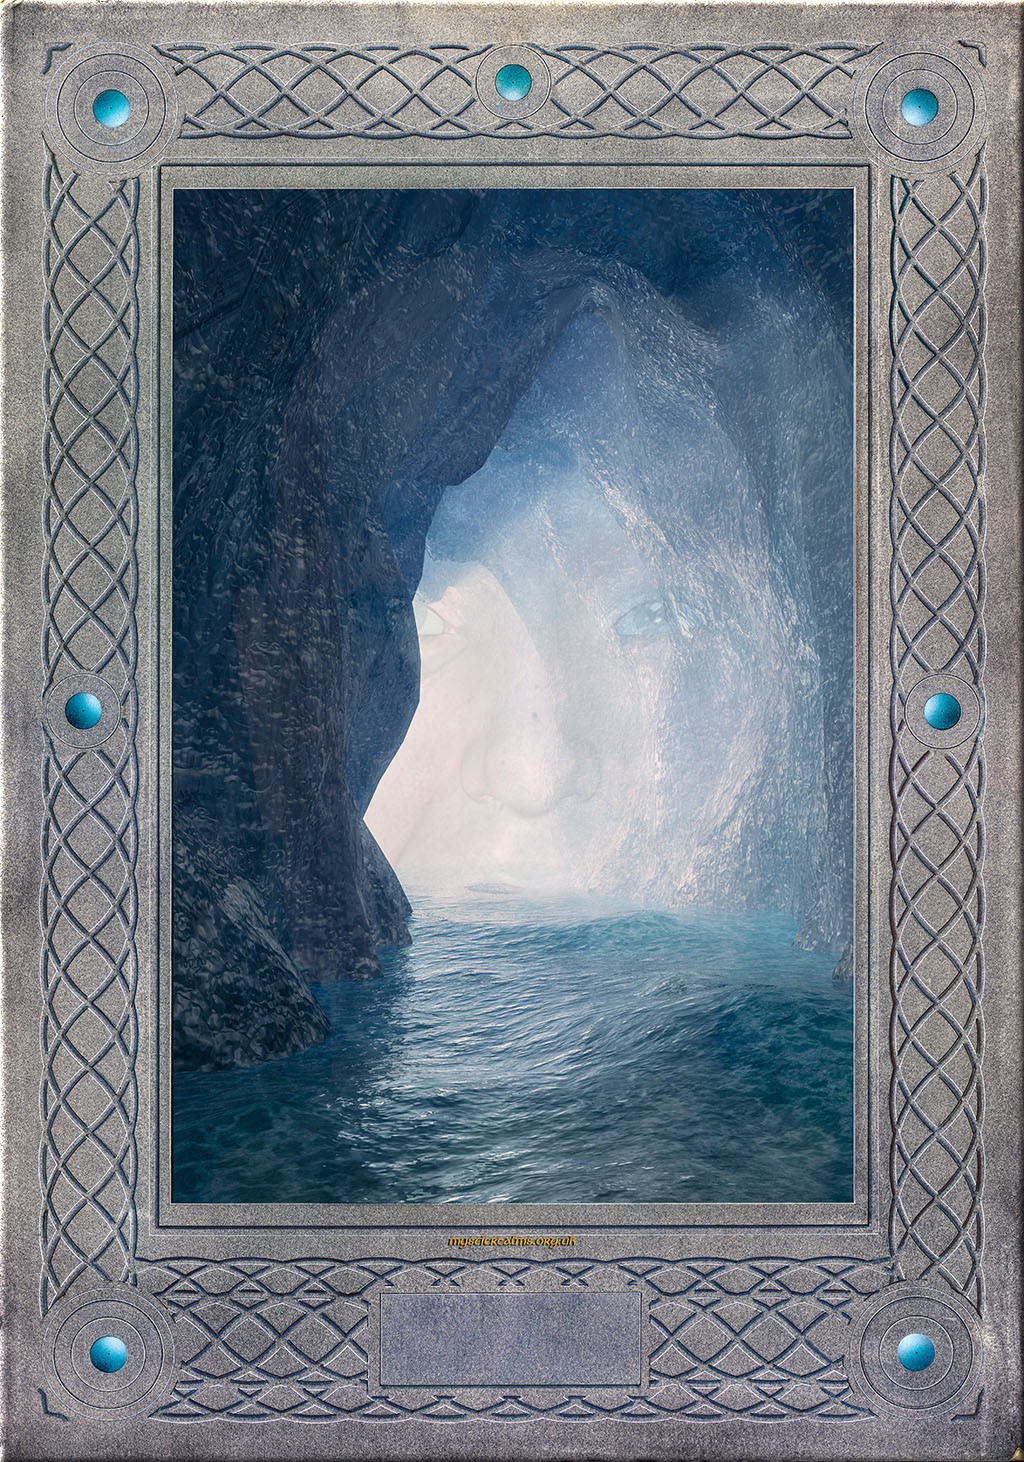 Merlin's Cave, Tintagel   Illustration by Les Still